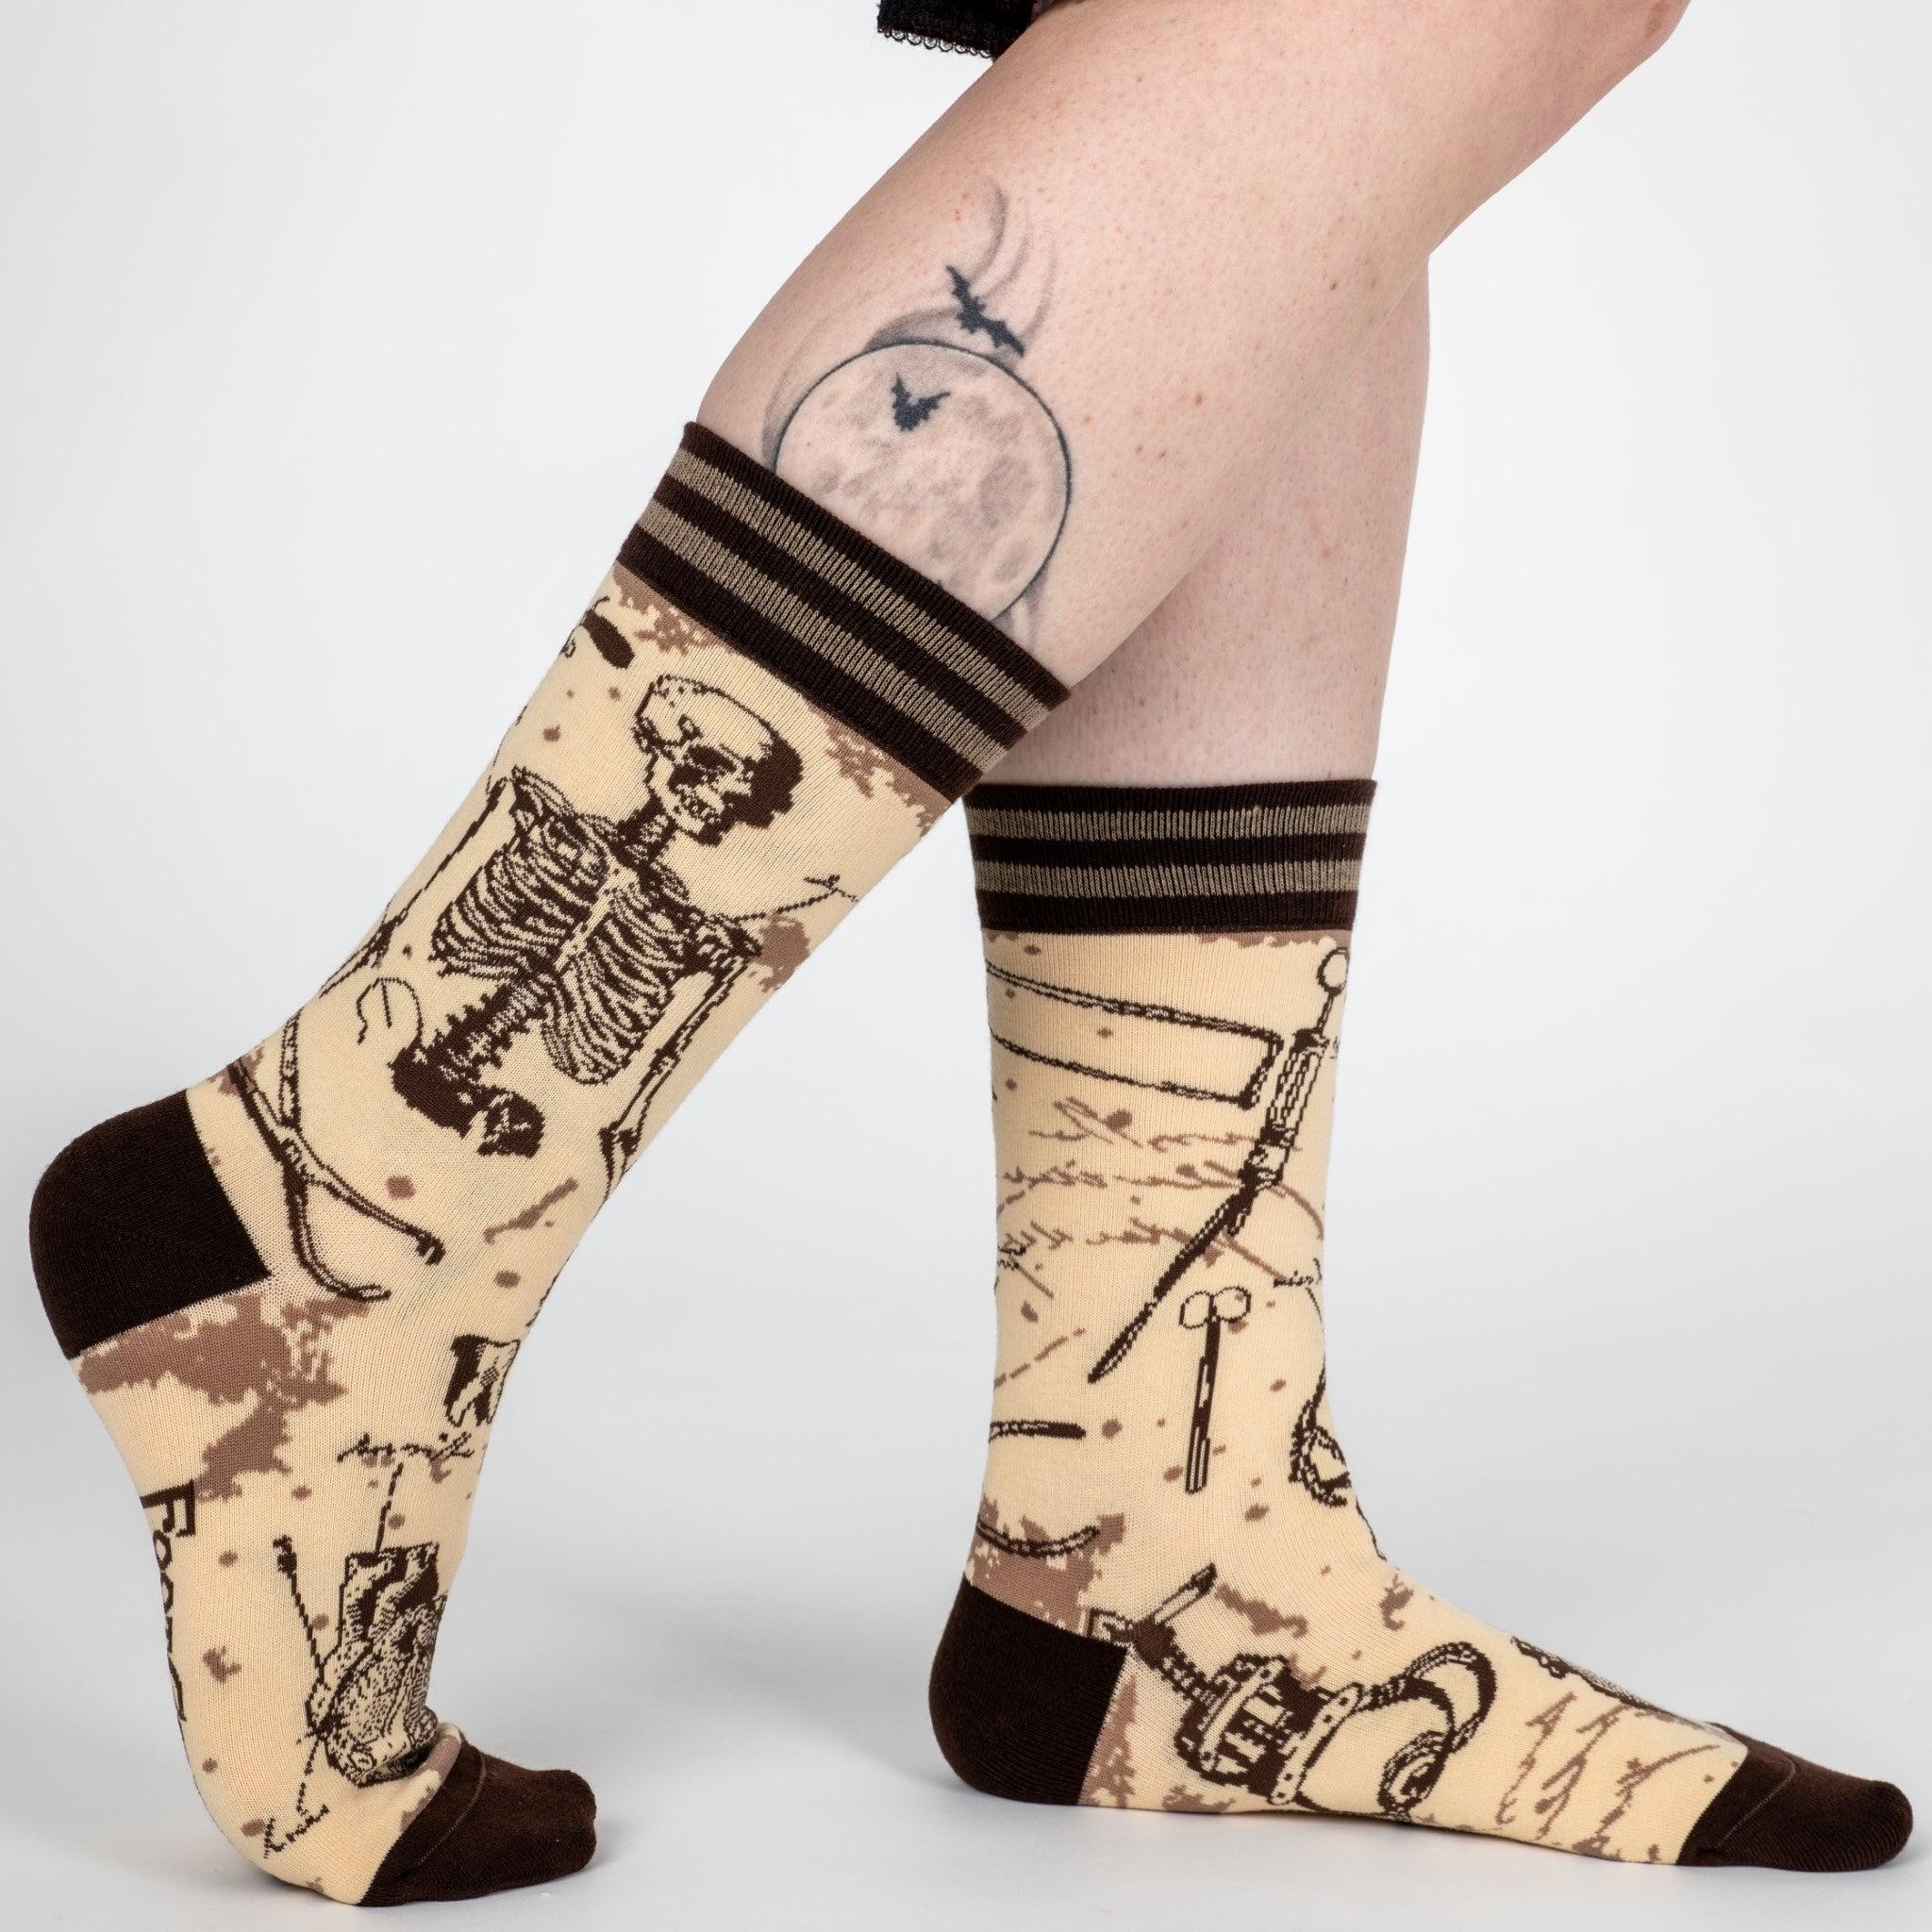 Antique Medical Crew Socks - FootClothes